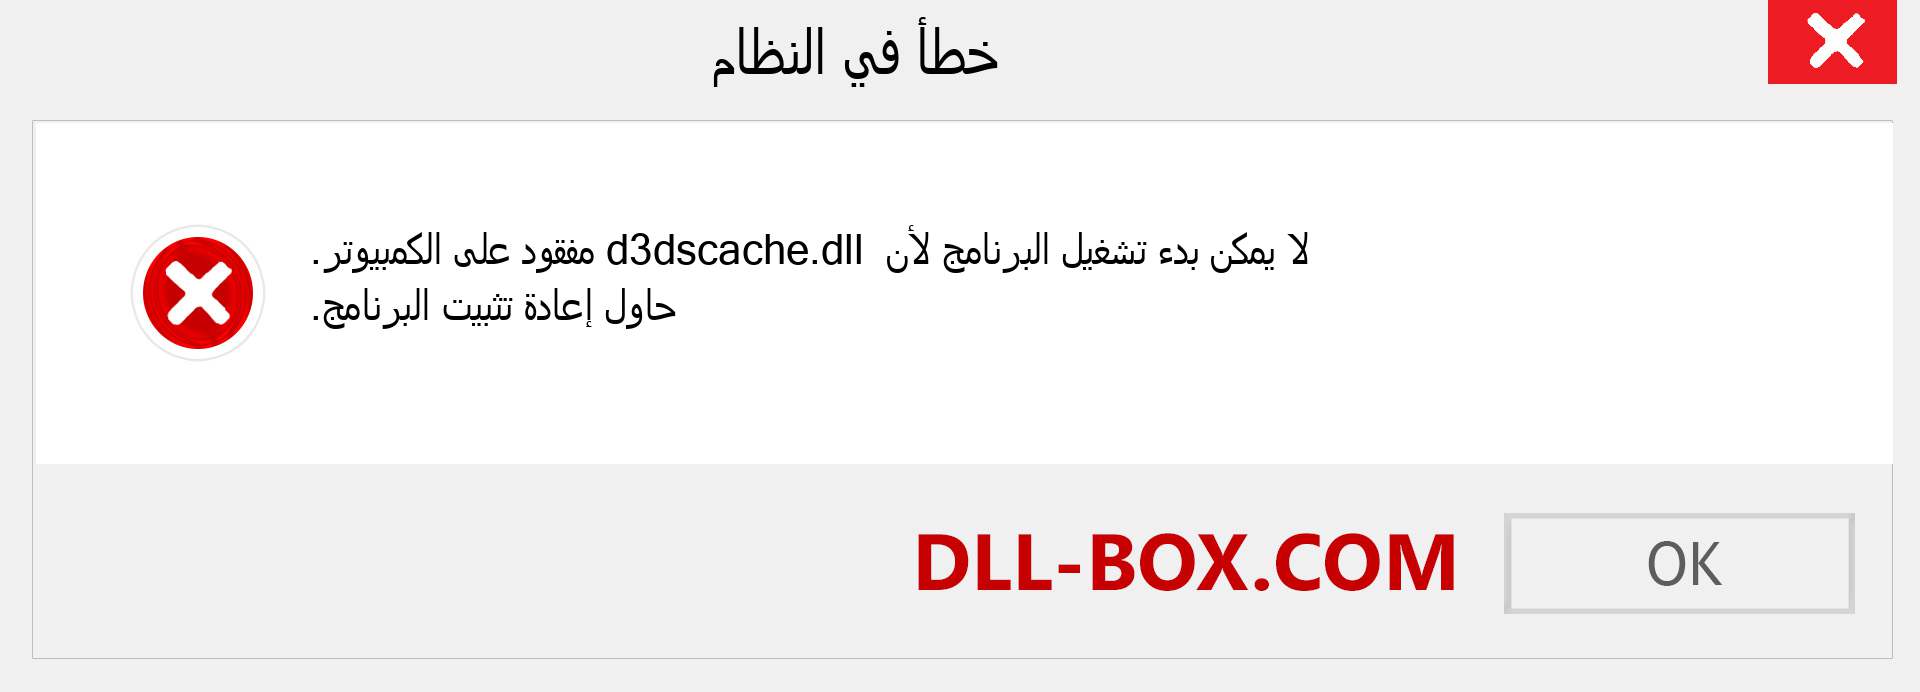 ملف d3dscache.dll مفقود ؟. التنزيل لنظام التشغيل Windows 7 و 8 و 10 - إصلاح خطأ d3dscache dll المفقود على Windows والصور والصور